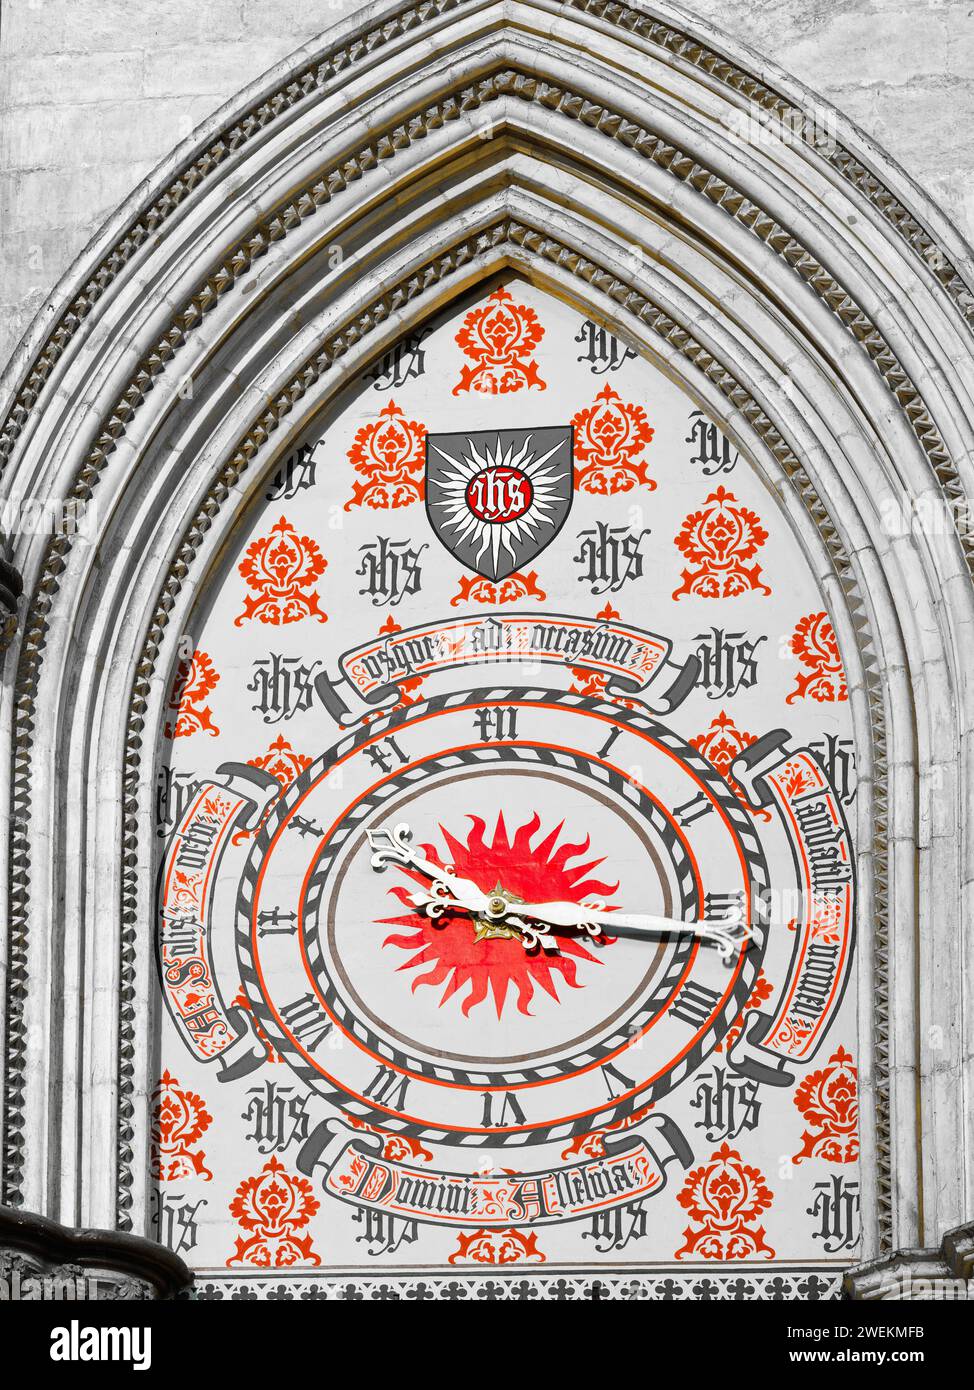 Horloge dans le transept nord de la cathédrale médiévale de york, Angleterre. Banque D'Images